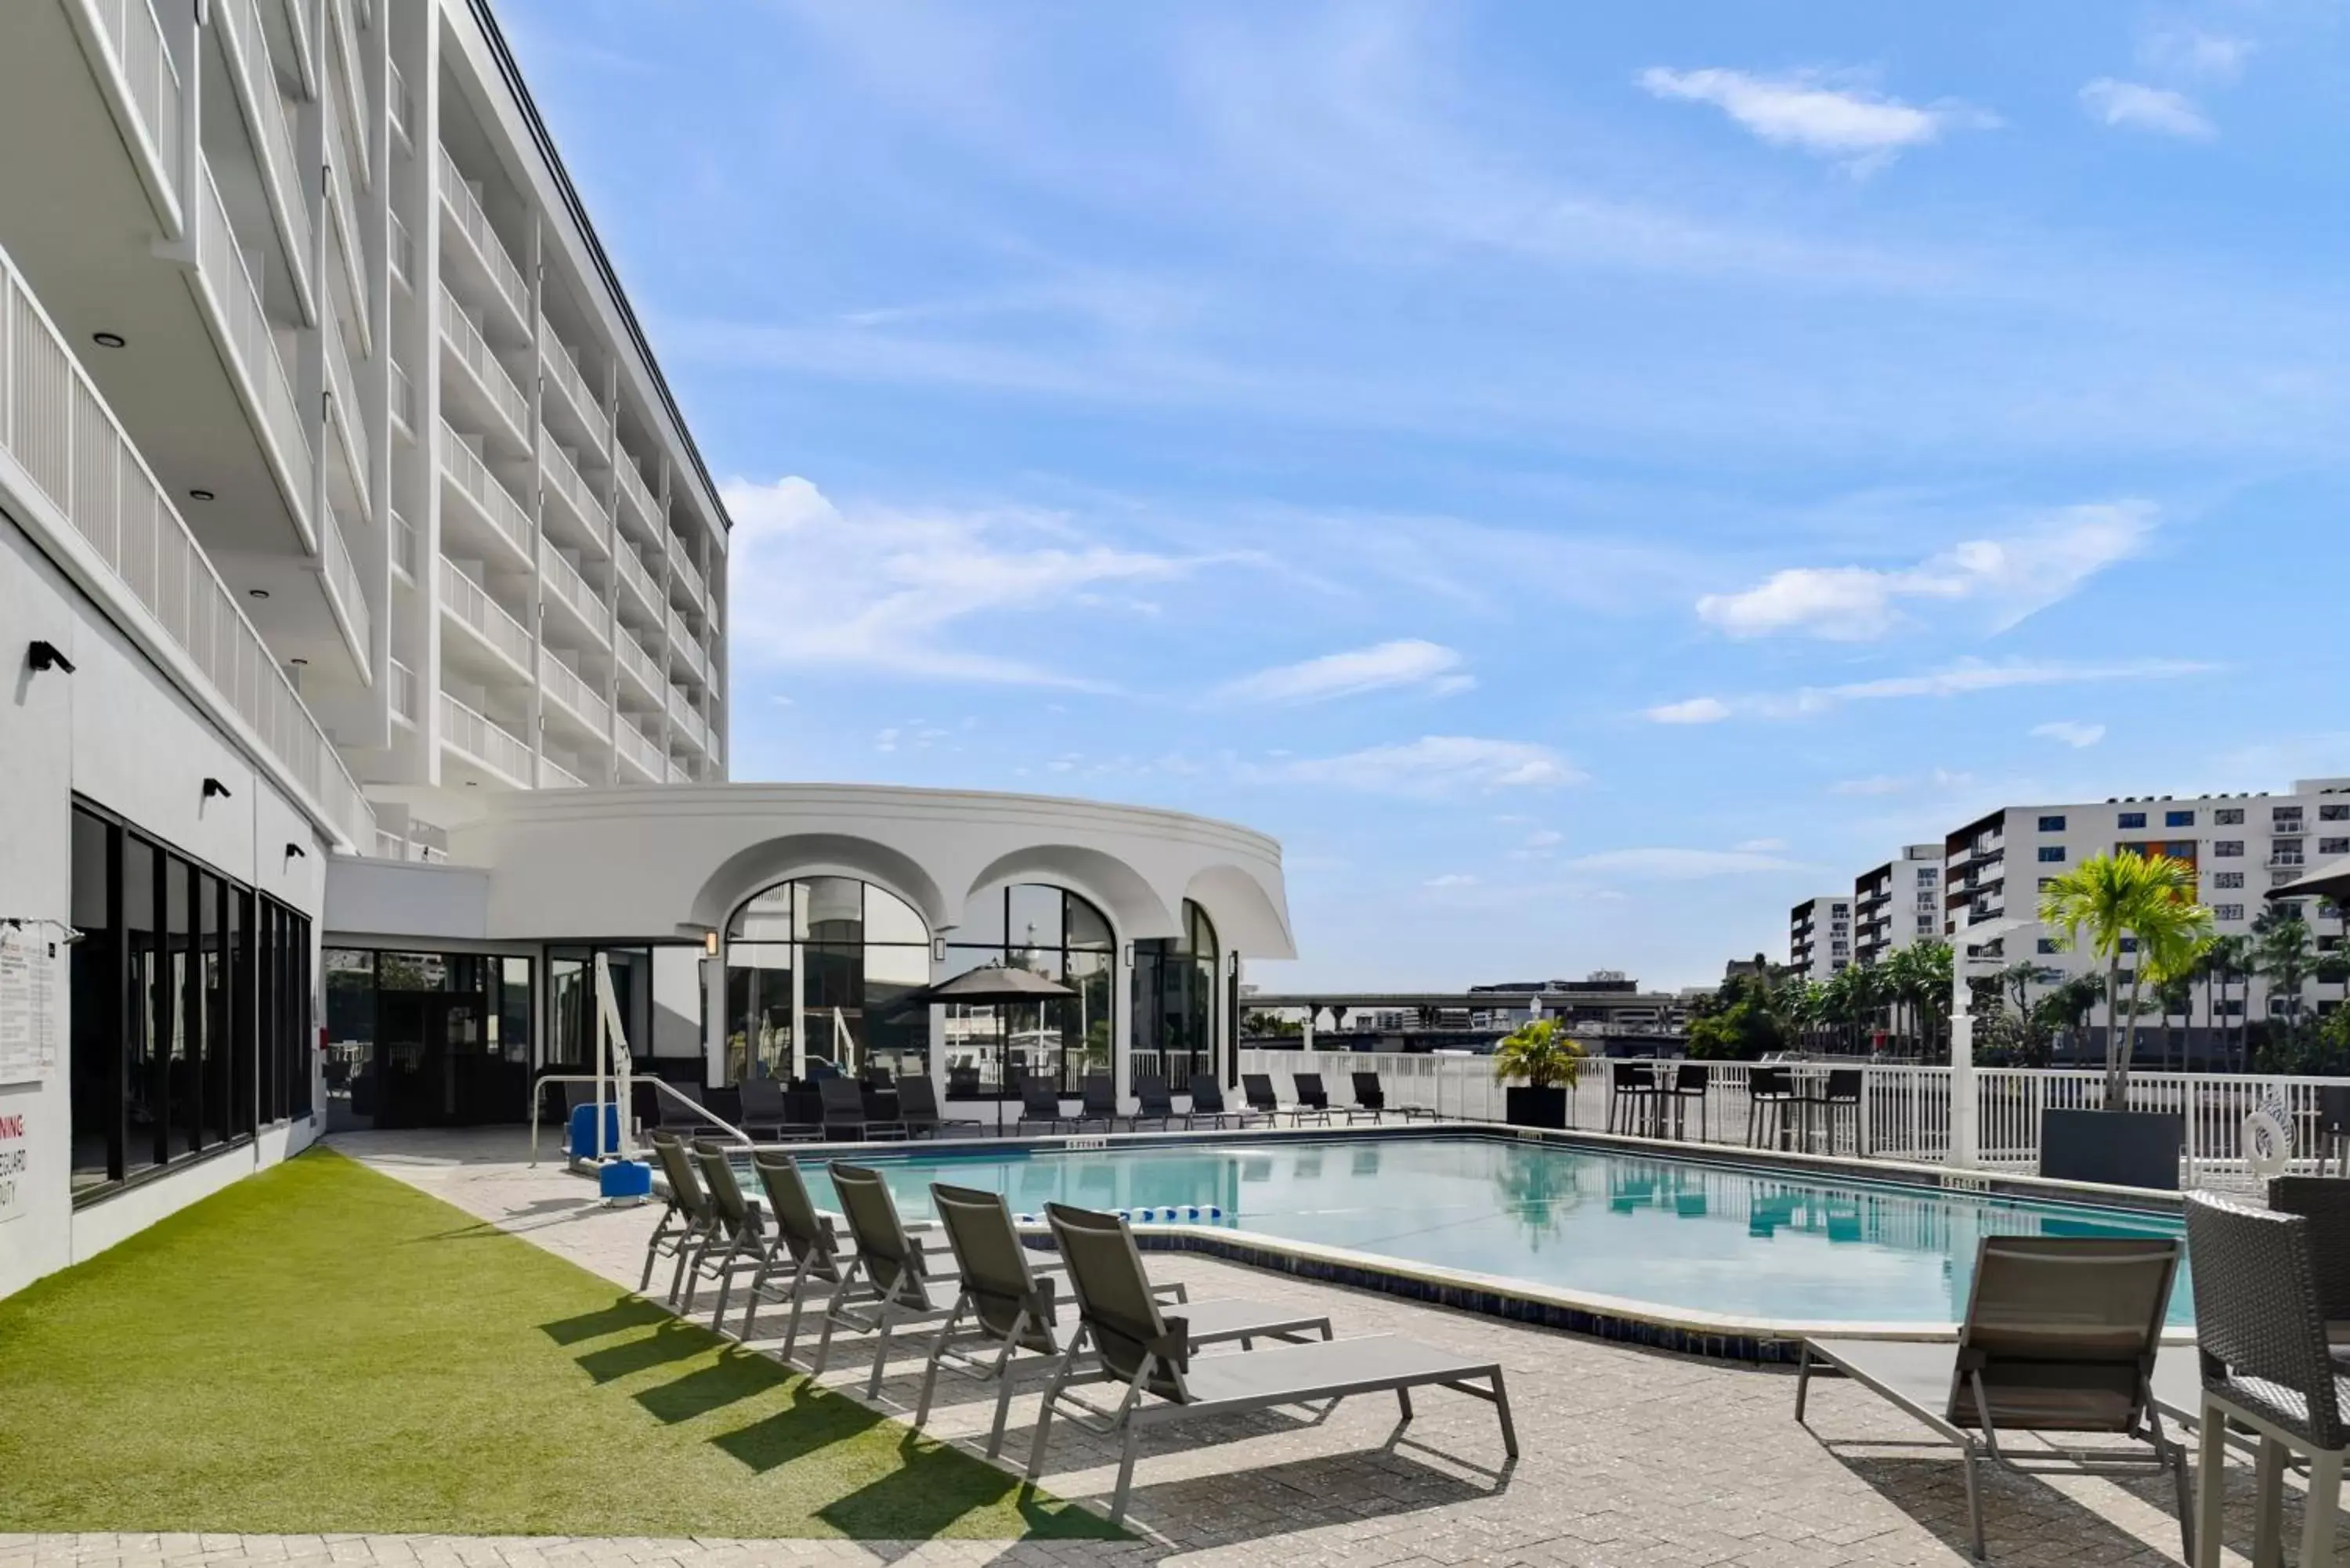 Swimming Pool in Hotel Tampa Riverwalk